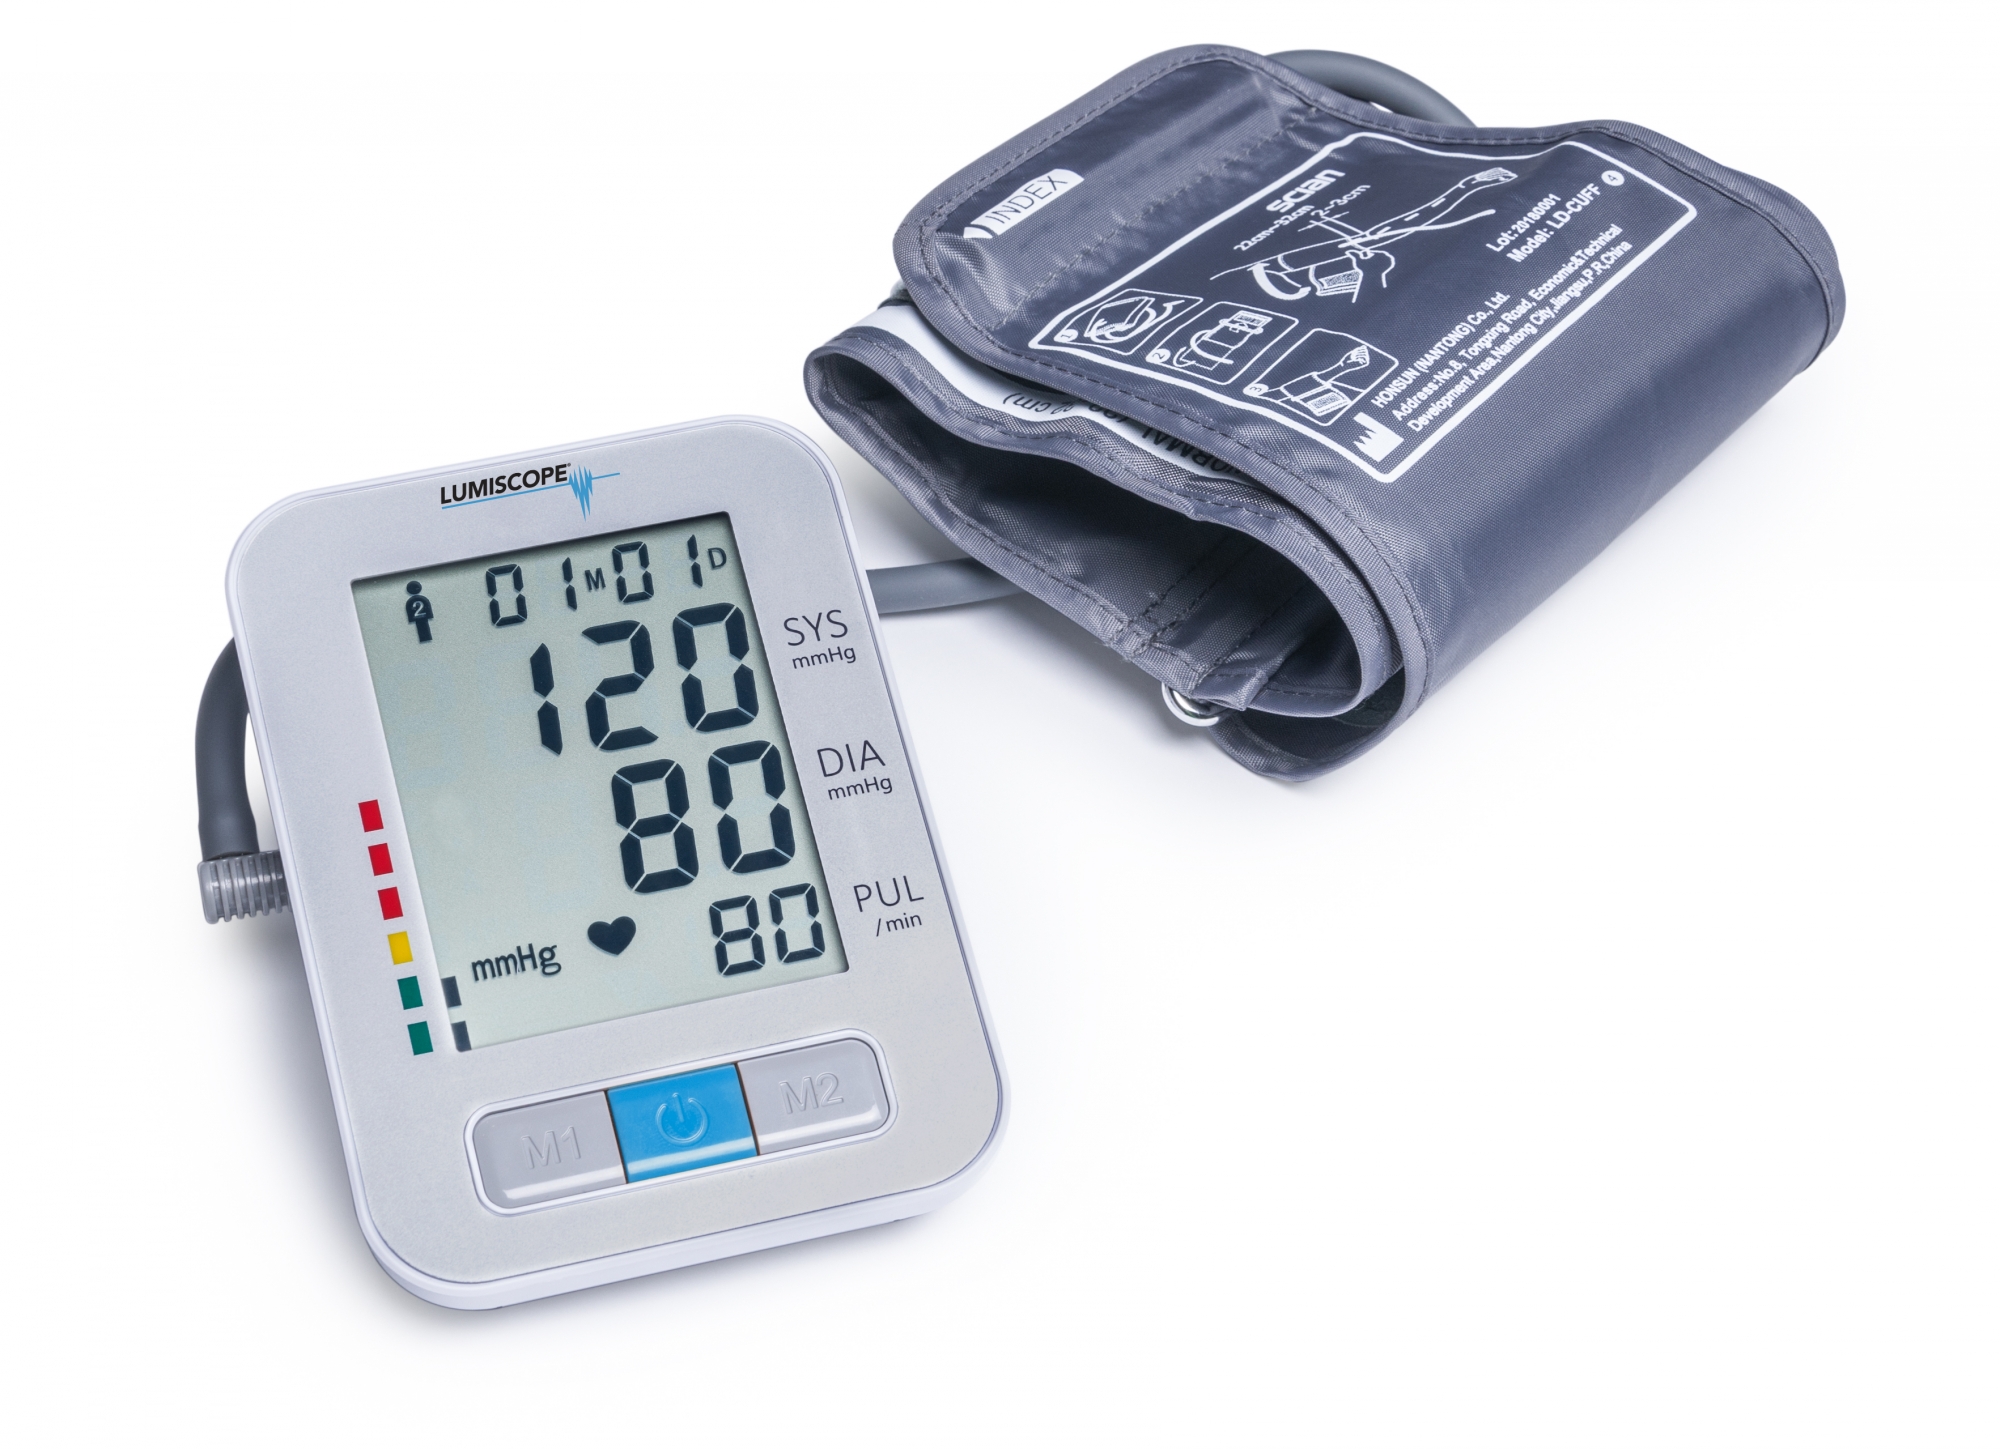 Купить тонометр в гродно. Измеритель давления Дигитал Блоод. Lumiscope диагностический тонометр. Lumiscope тонометр 1060. Тонометр fully Automatic Digital Wrist Blood Pressure Monitor model number w02.